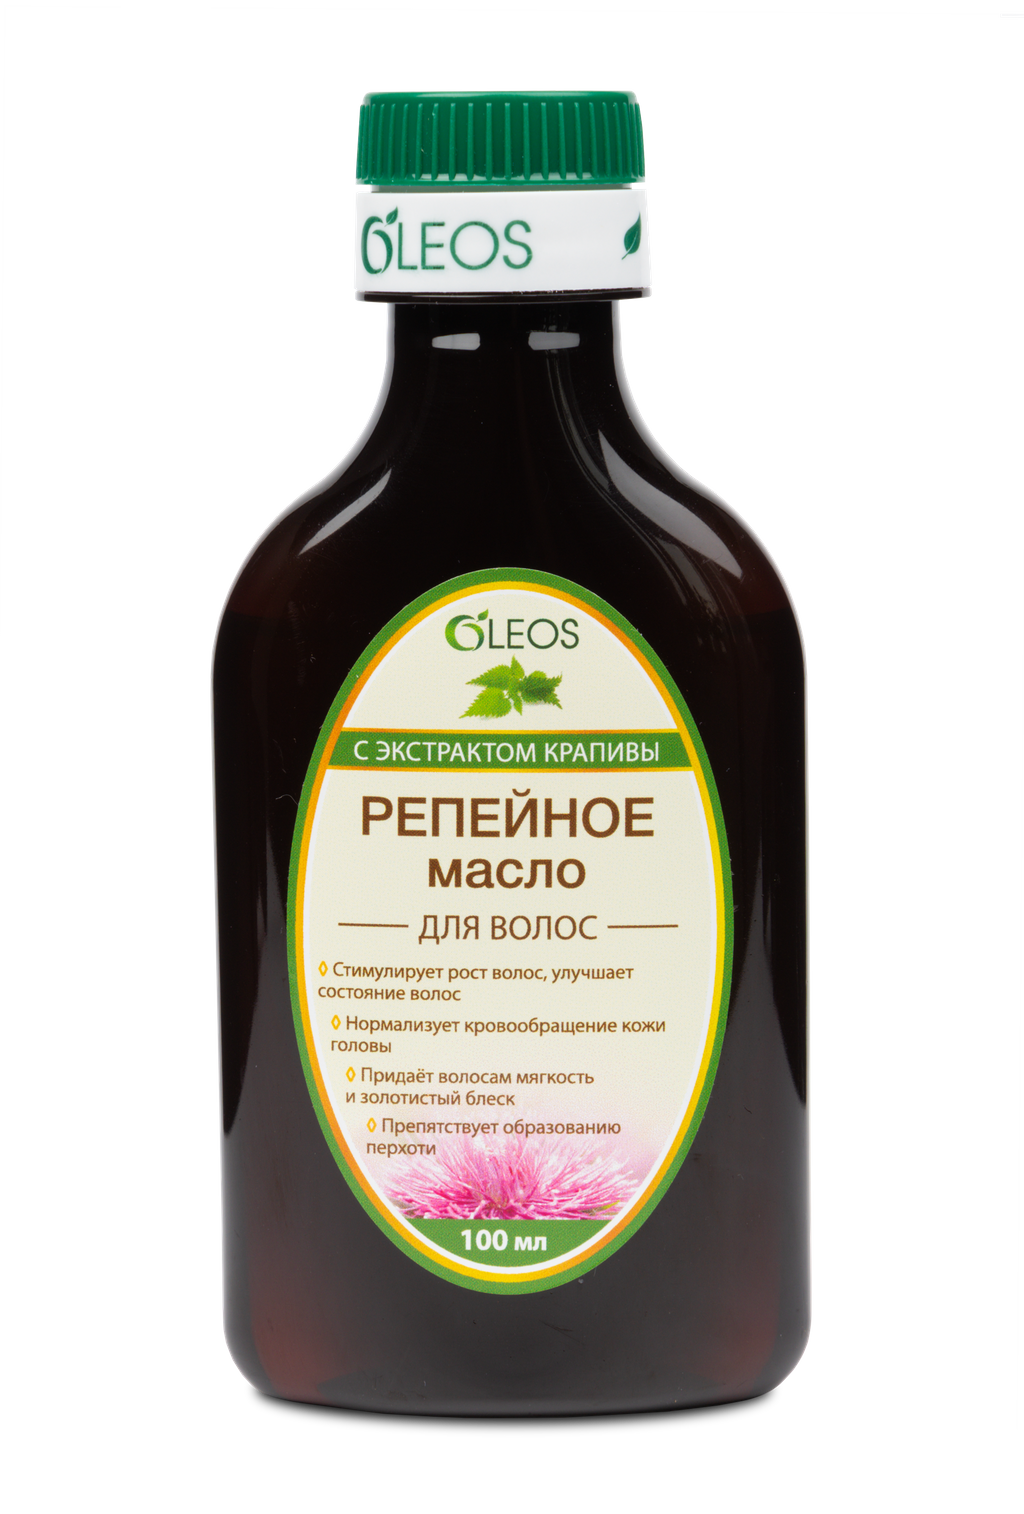 Oleos Масло репейное с экстрактом крапивы, масло косметическое, 125 мл, 1 шт.